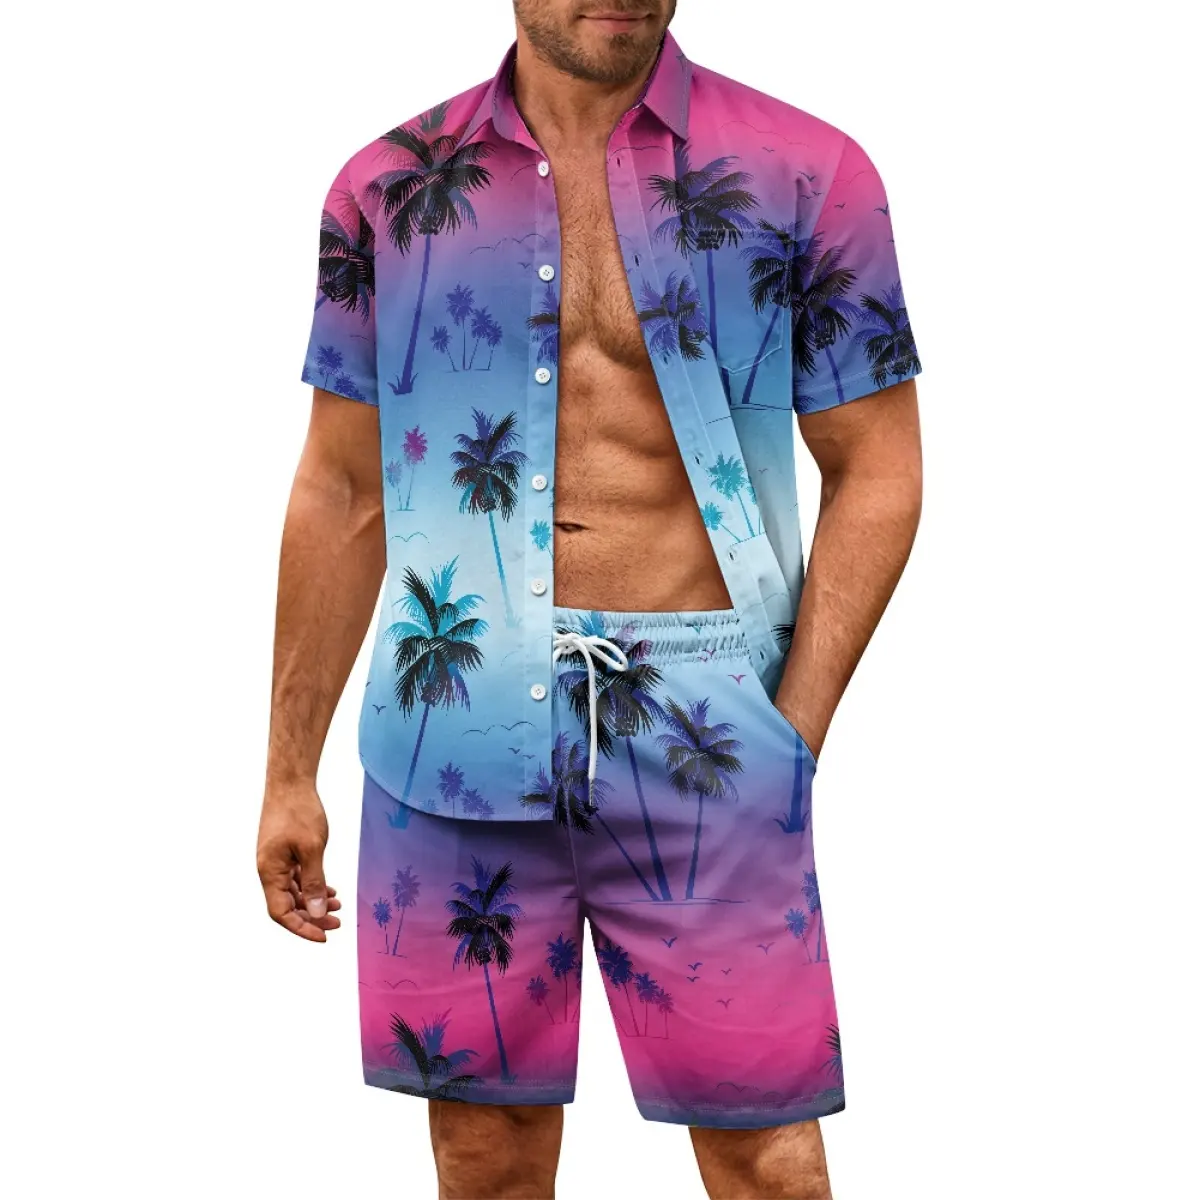 Setelan baju pantai kasual pria, set kemeja Hawaii pria kasual harga grosir, setelan pantai lengan pendek modis bermotif sesuai permintaan